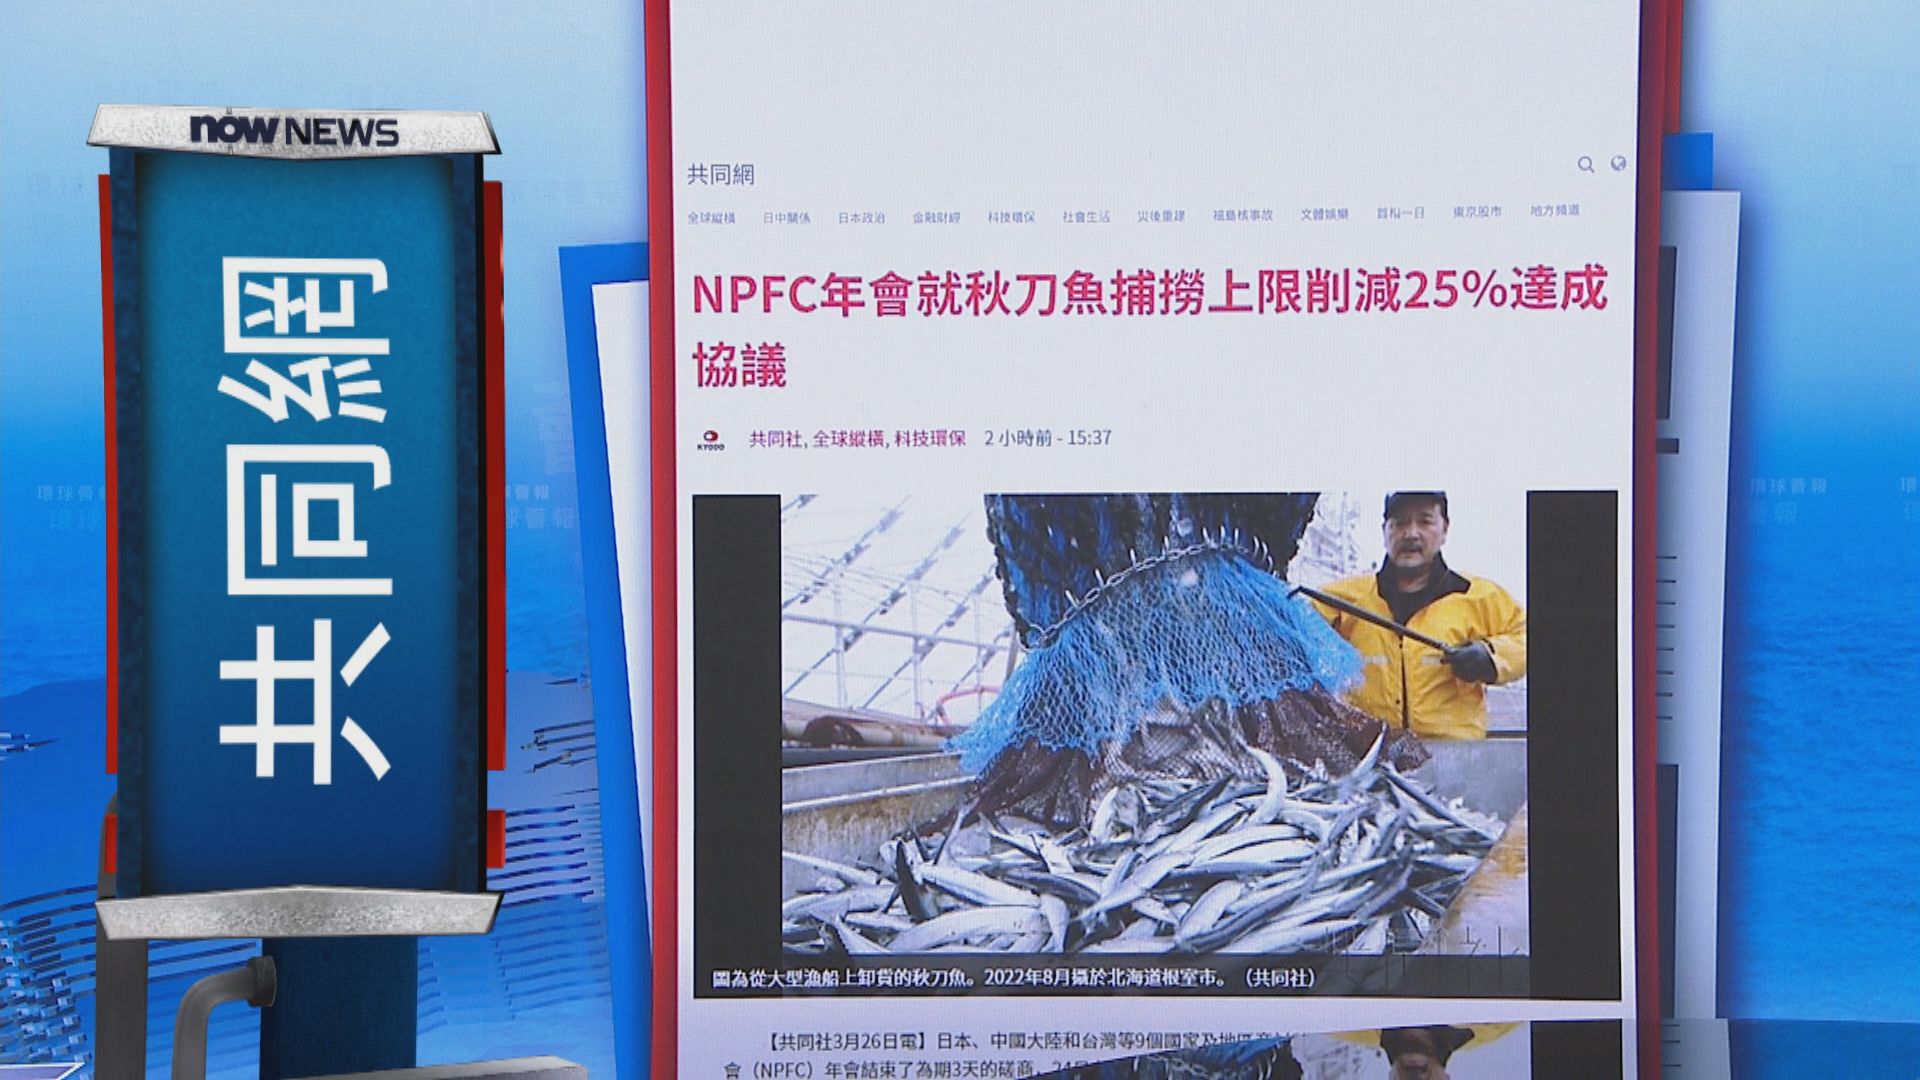 【環球薈報】中日等多國同意進一步削減秋刀魚捕撈上限